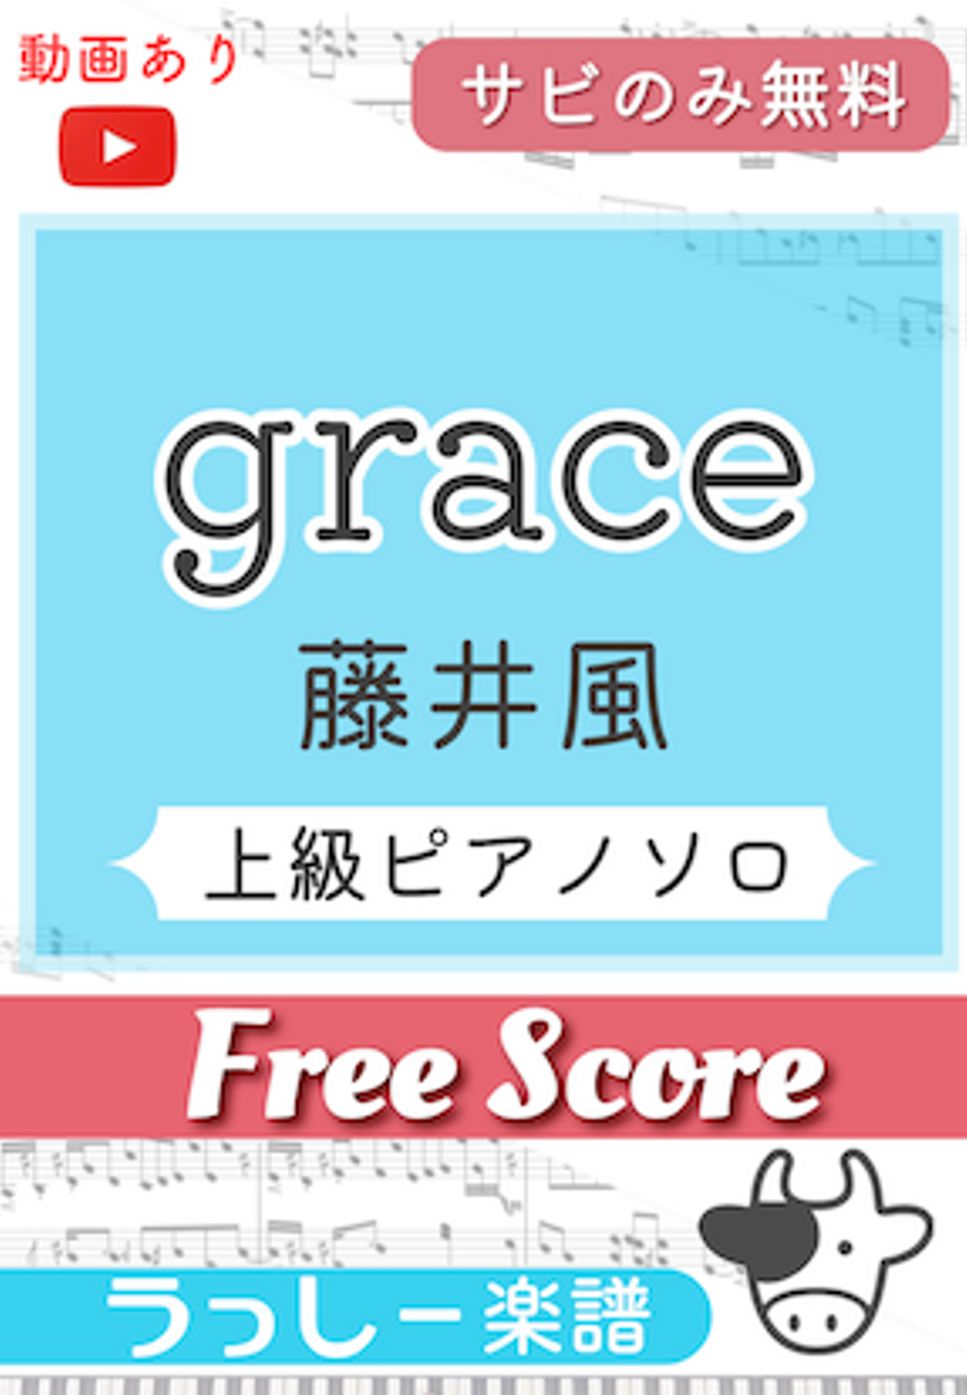 藤井風 - grace (サビのみ無料) by 牛武奏人